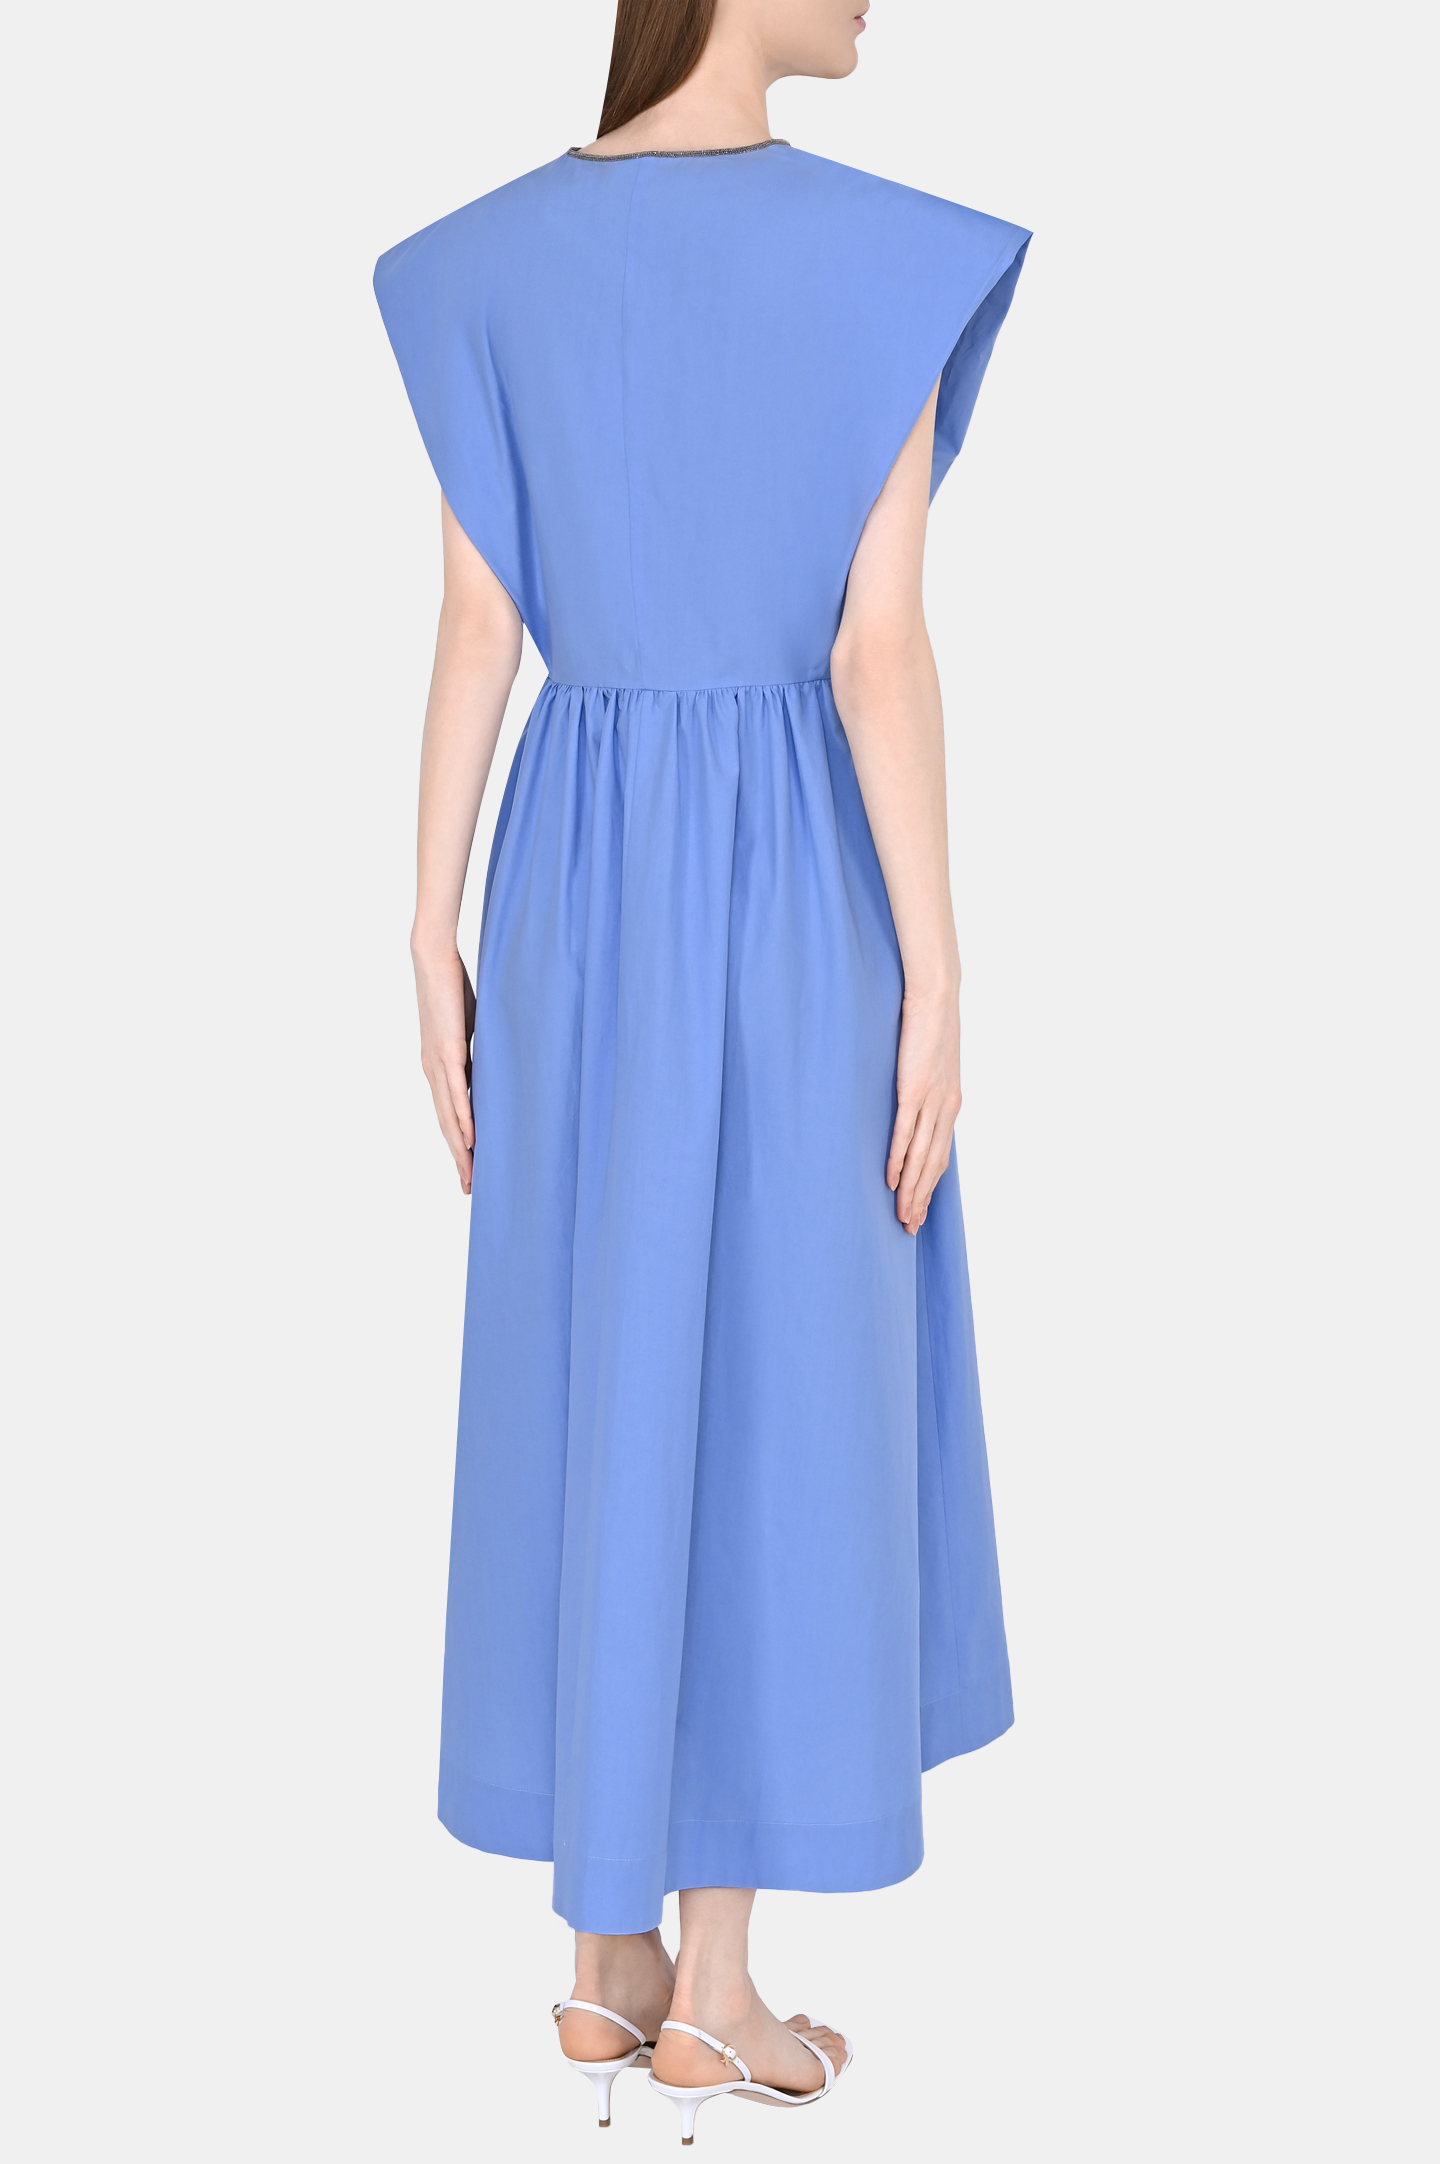 Платье FABIANA FILIPPI ABD273W193D252, цвет: Голубой, Женский